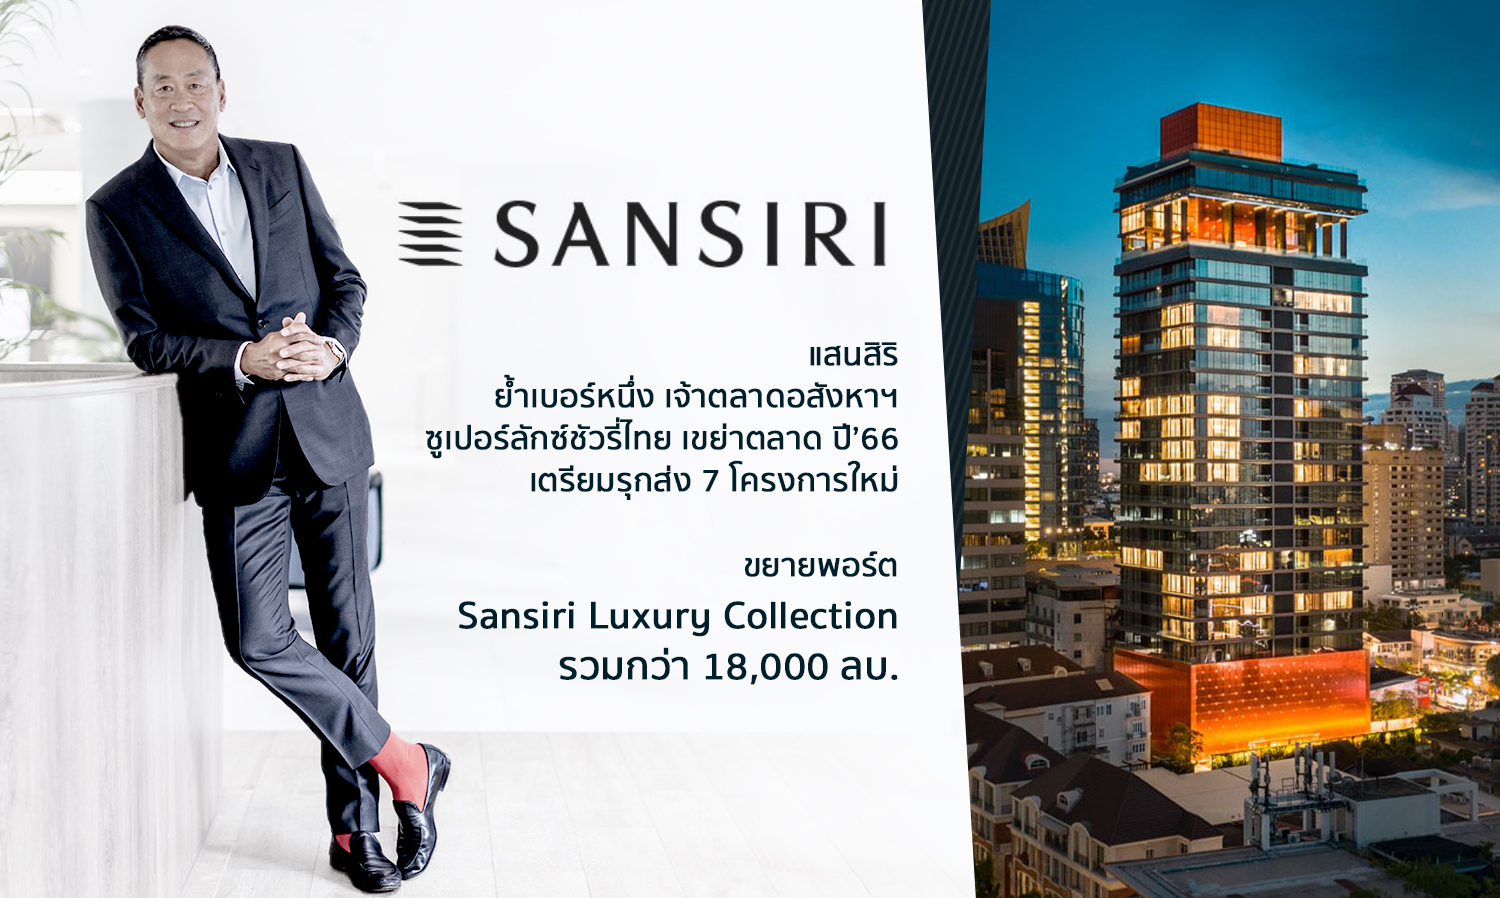 แสนสิริ ย้ำเบอร์หนึ่ง เจ้าตลาดอสังหาฯซูเปอร์ลักซ์ชัวรี่ไทย เขย่าตลาด ปี 66 เตรียมรุกส่ง 7 โครงการใหม่ ขยายพอร์ต Sansiri Luxury Collection รวมกว่า 18,000 ลบ. 